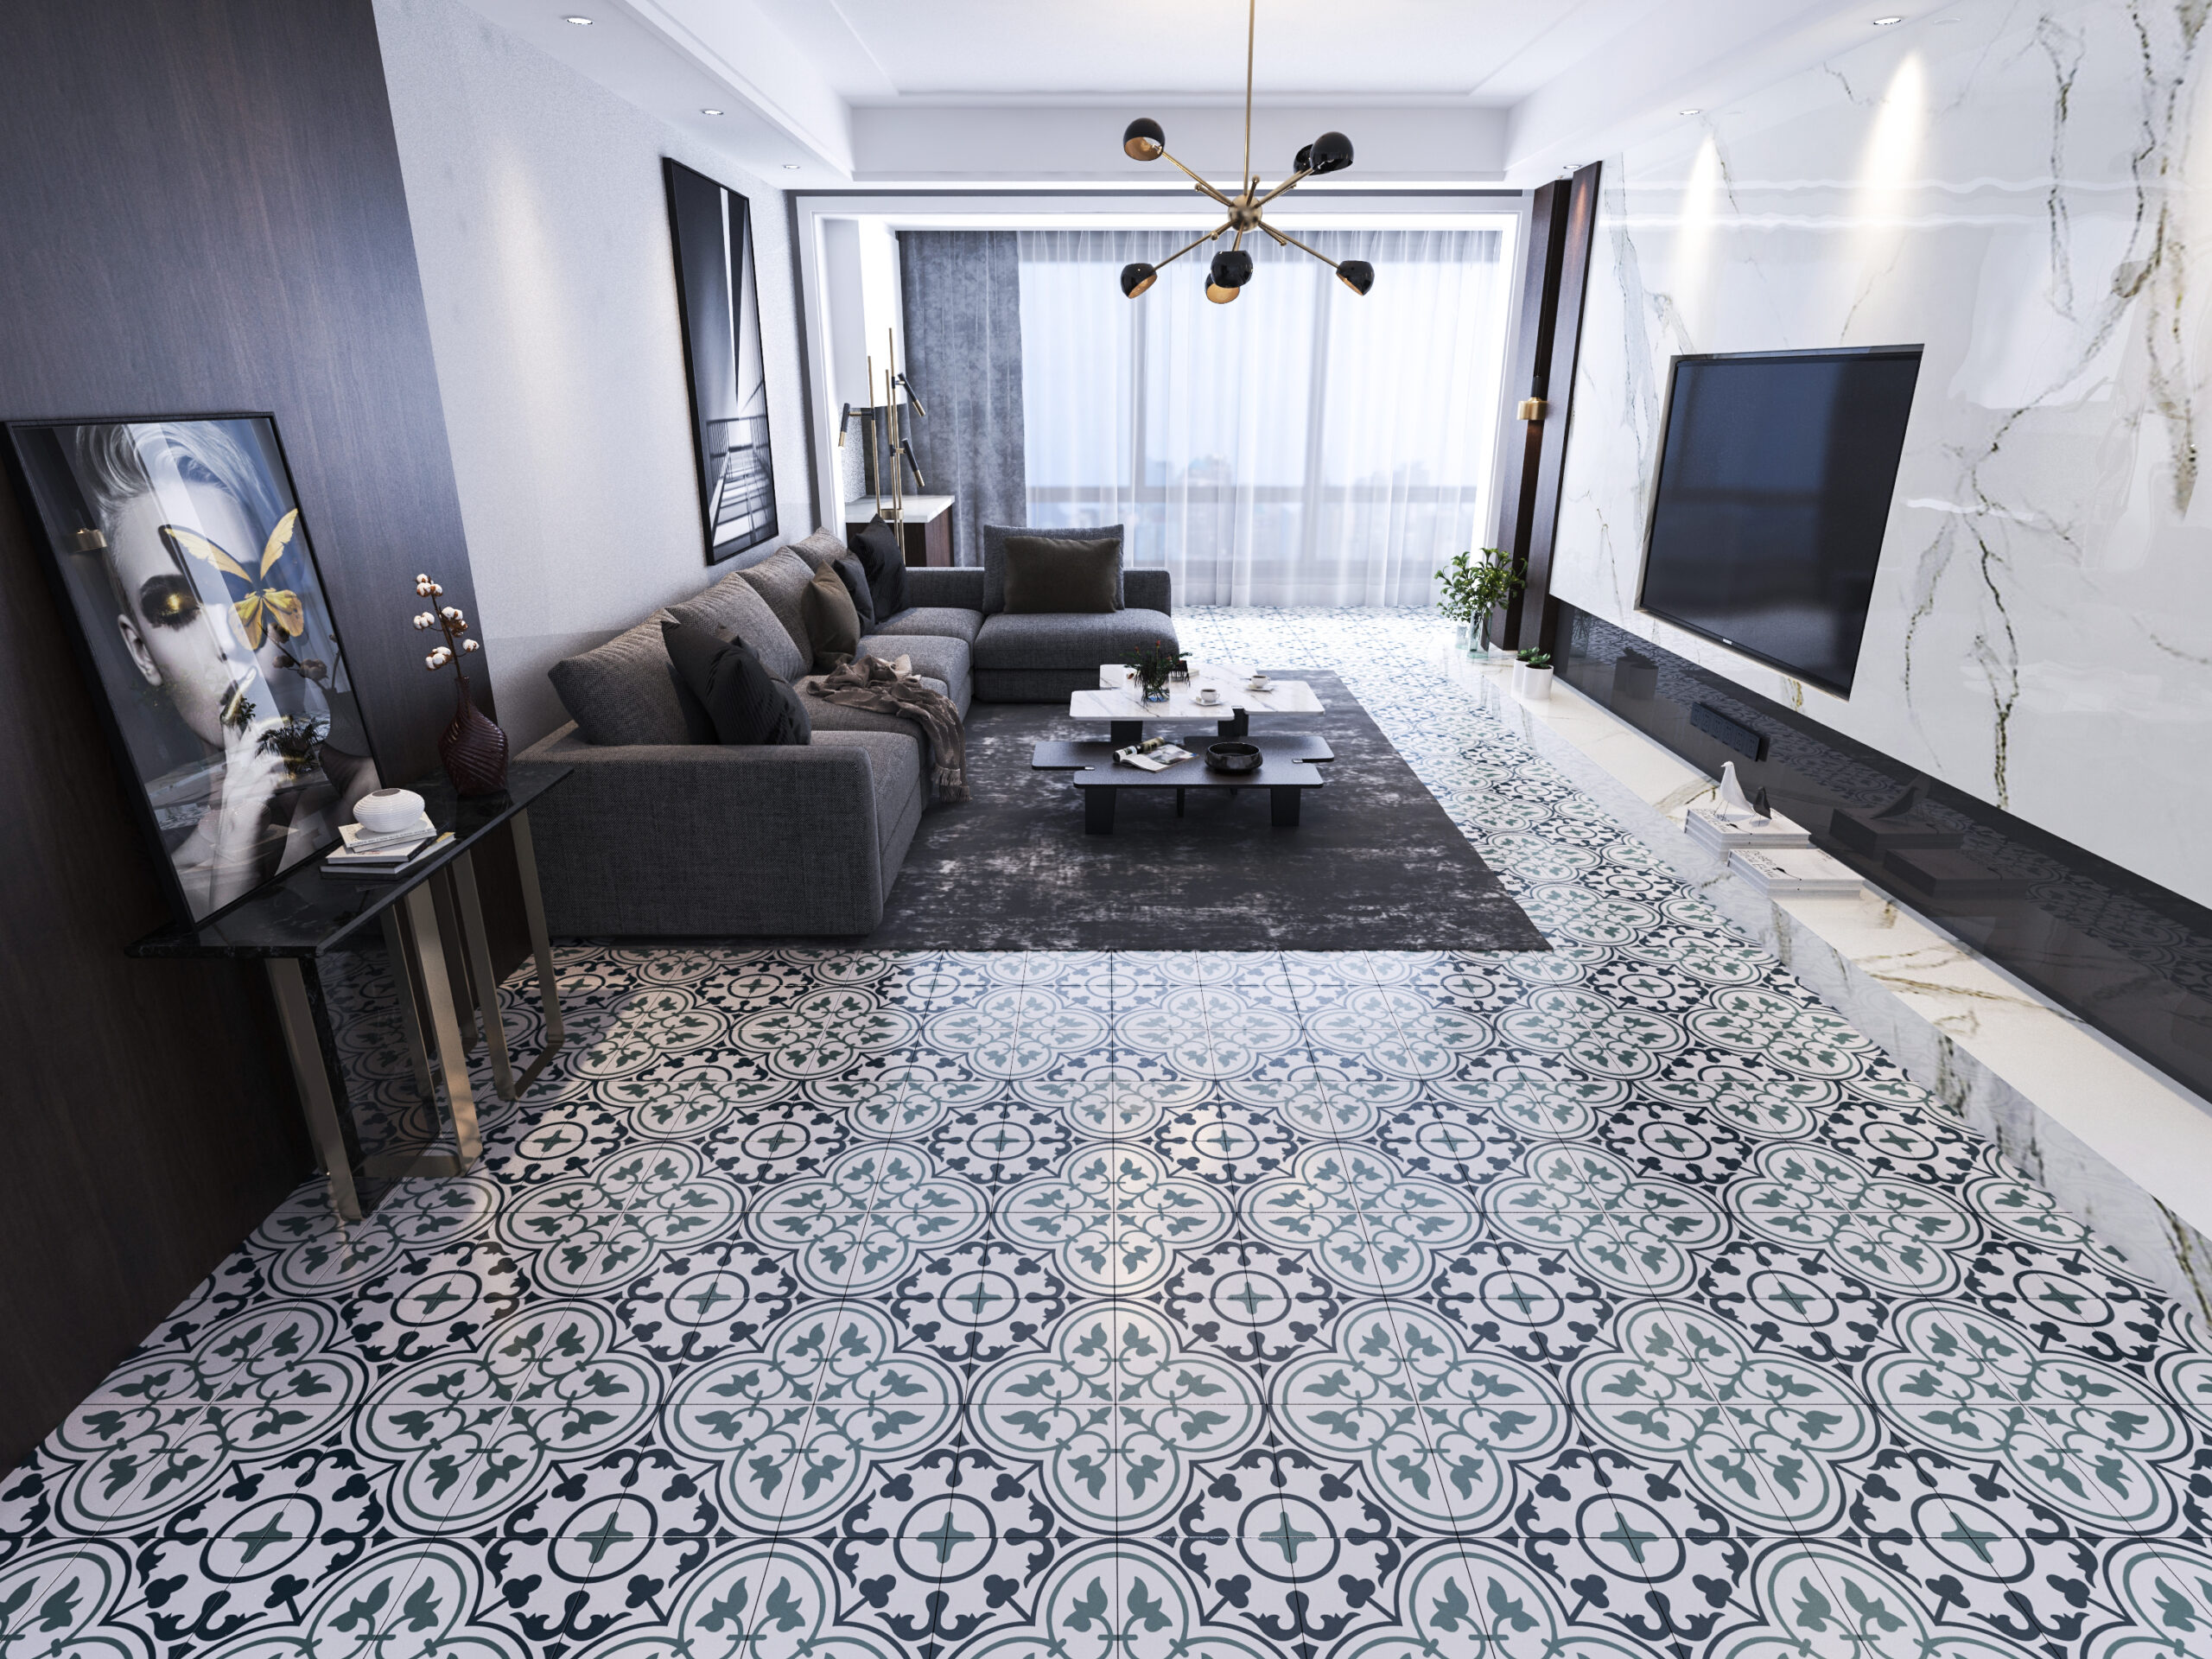 Tiles in Living Room scaled Décoration d’intérieur: 7 erreurs à éviter chez soi